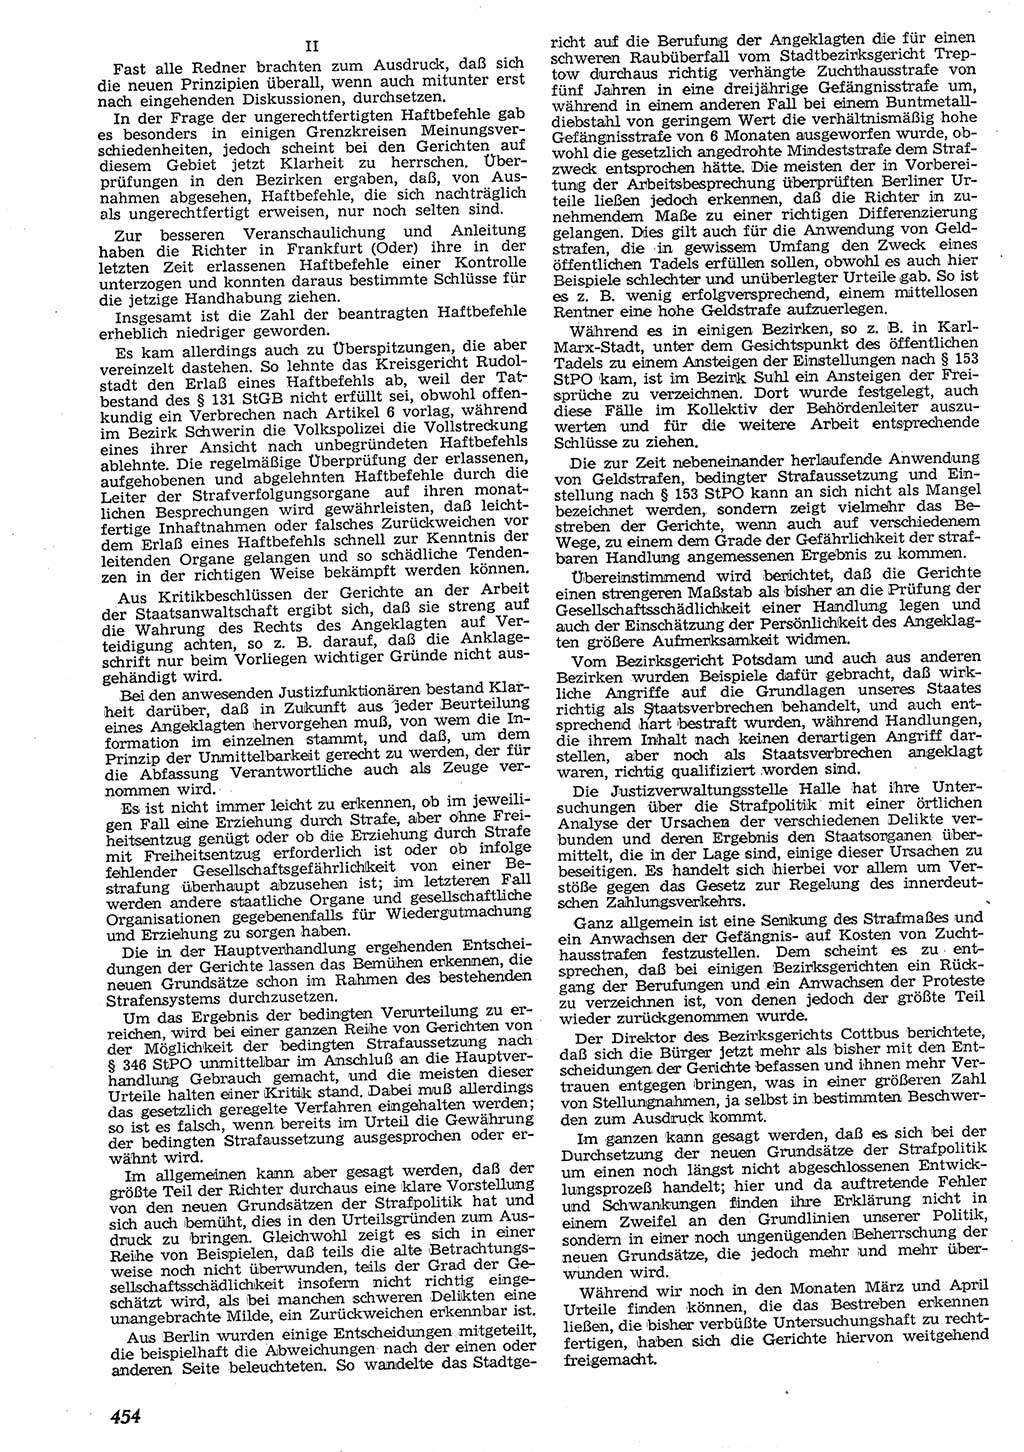 Neue Justiz (NJ), Zeitschrift für Recht und Rechtswissenschaft [Deutsche Demokratische Republik (DDR)], 10. Jahrgang 1956, Seite 454 (NJ DDR 1956, S. 454)